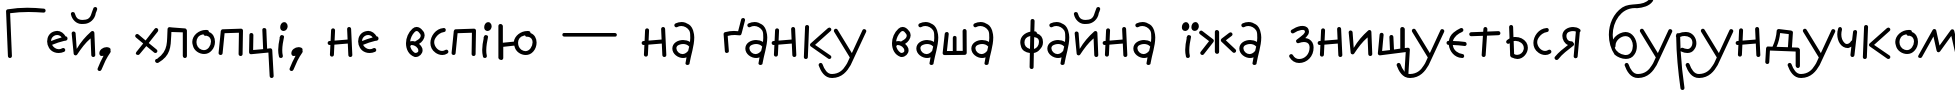 Пример написания шрифтом AuktyonZ текста на украинском